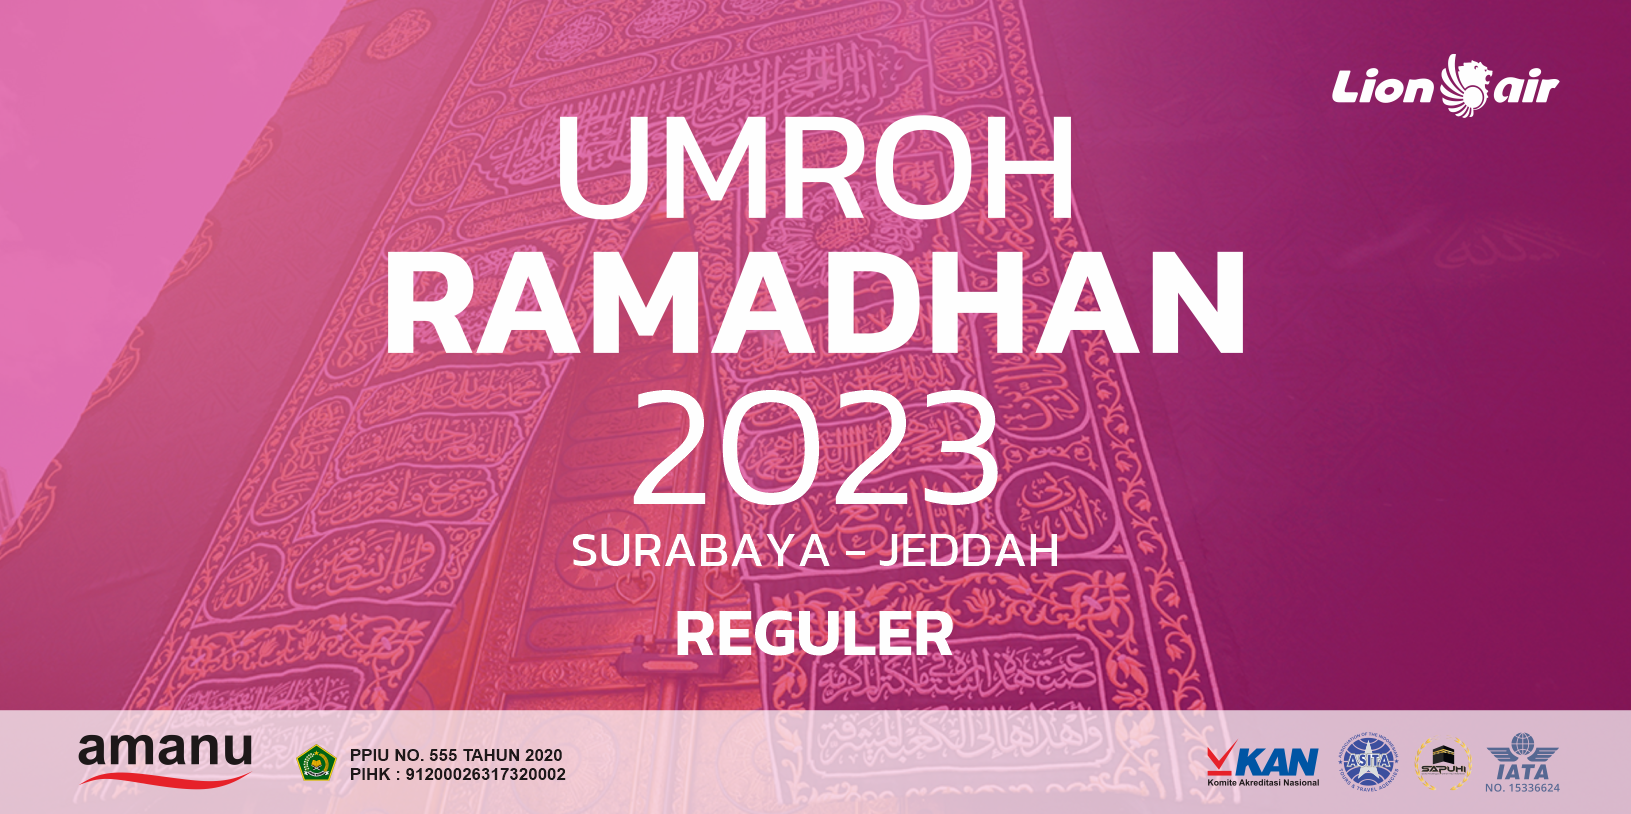 Umroh Ramadhan 2023 Reguler